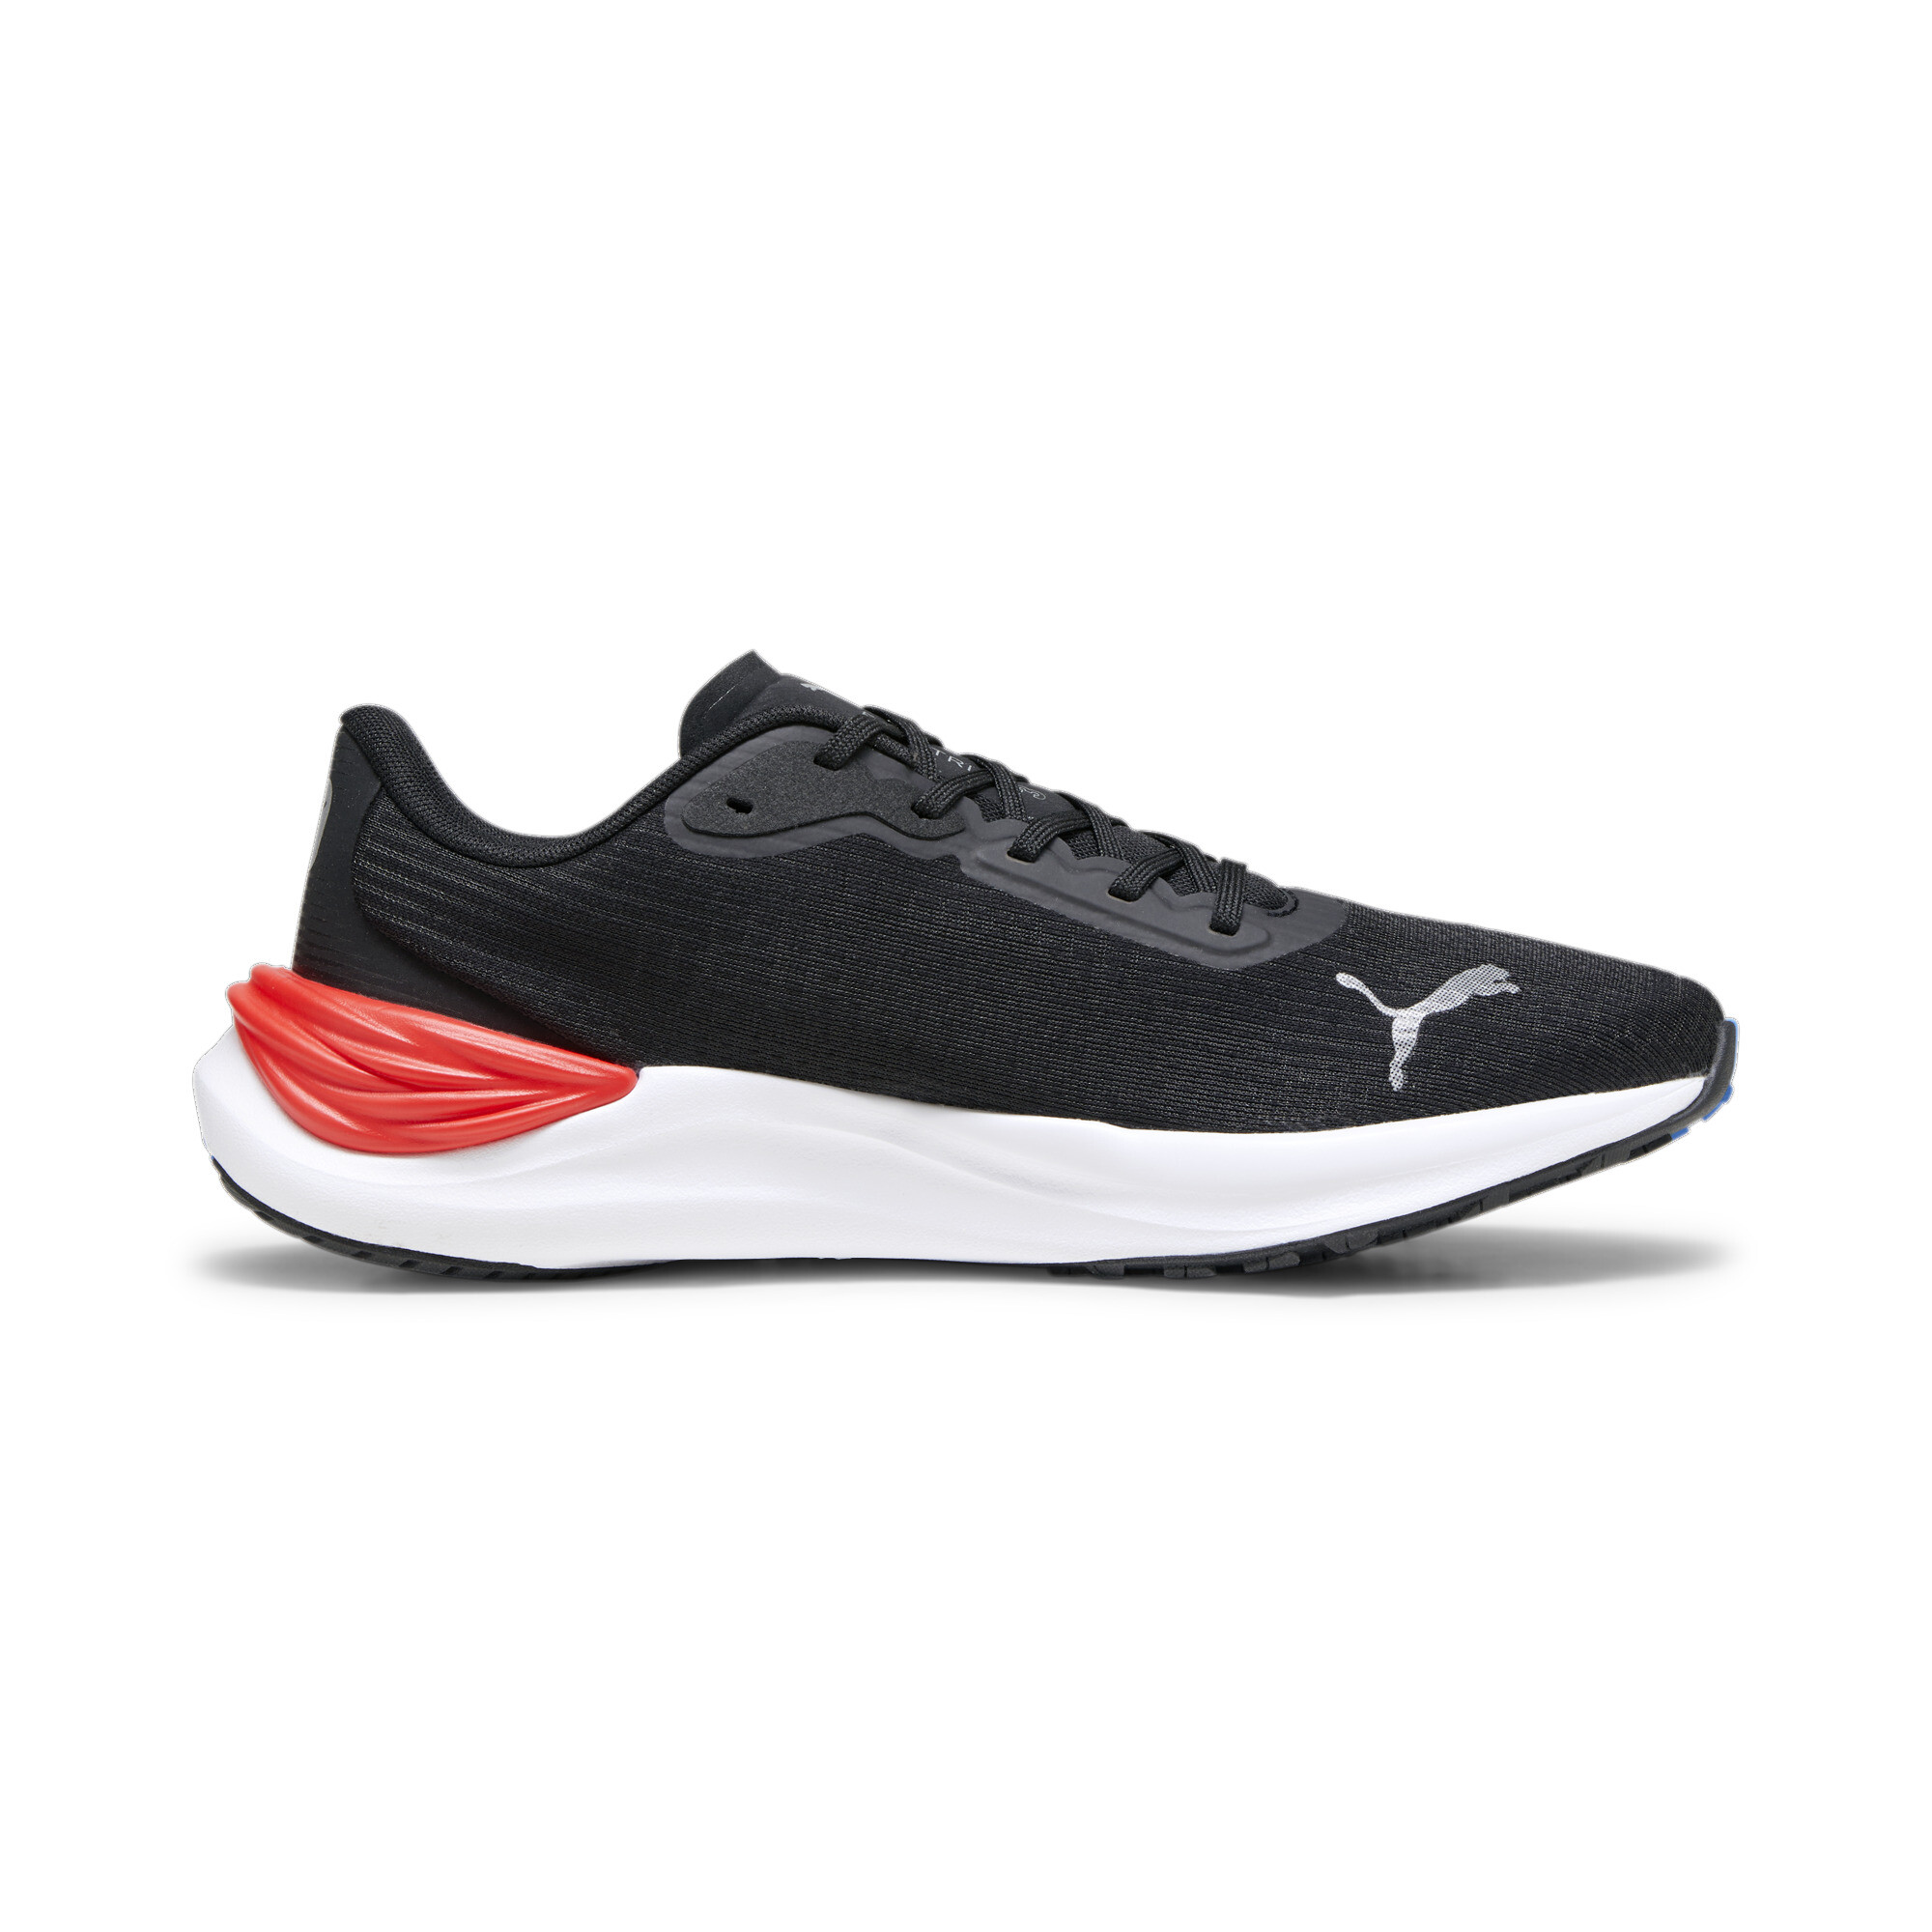 Men's PUMA Electrify NITROâ¢ 3 Running Shoes In Black, Size EU 44.5